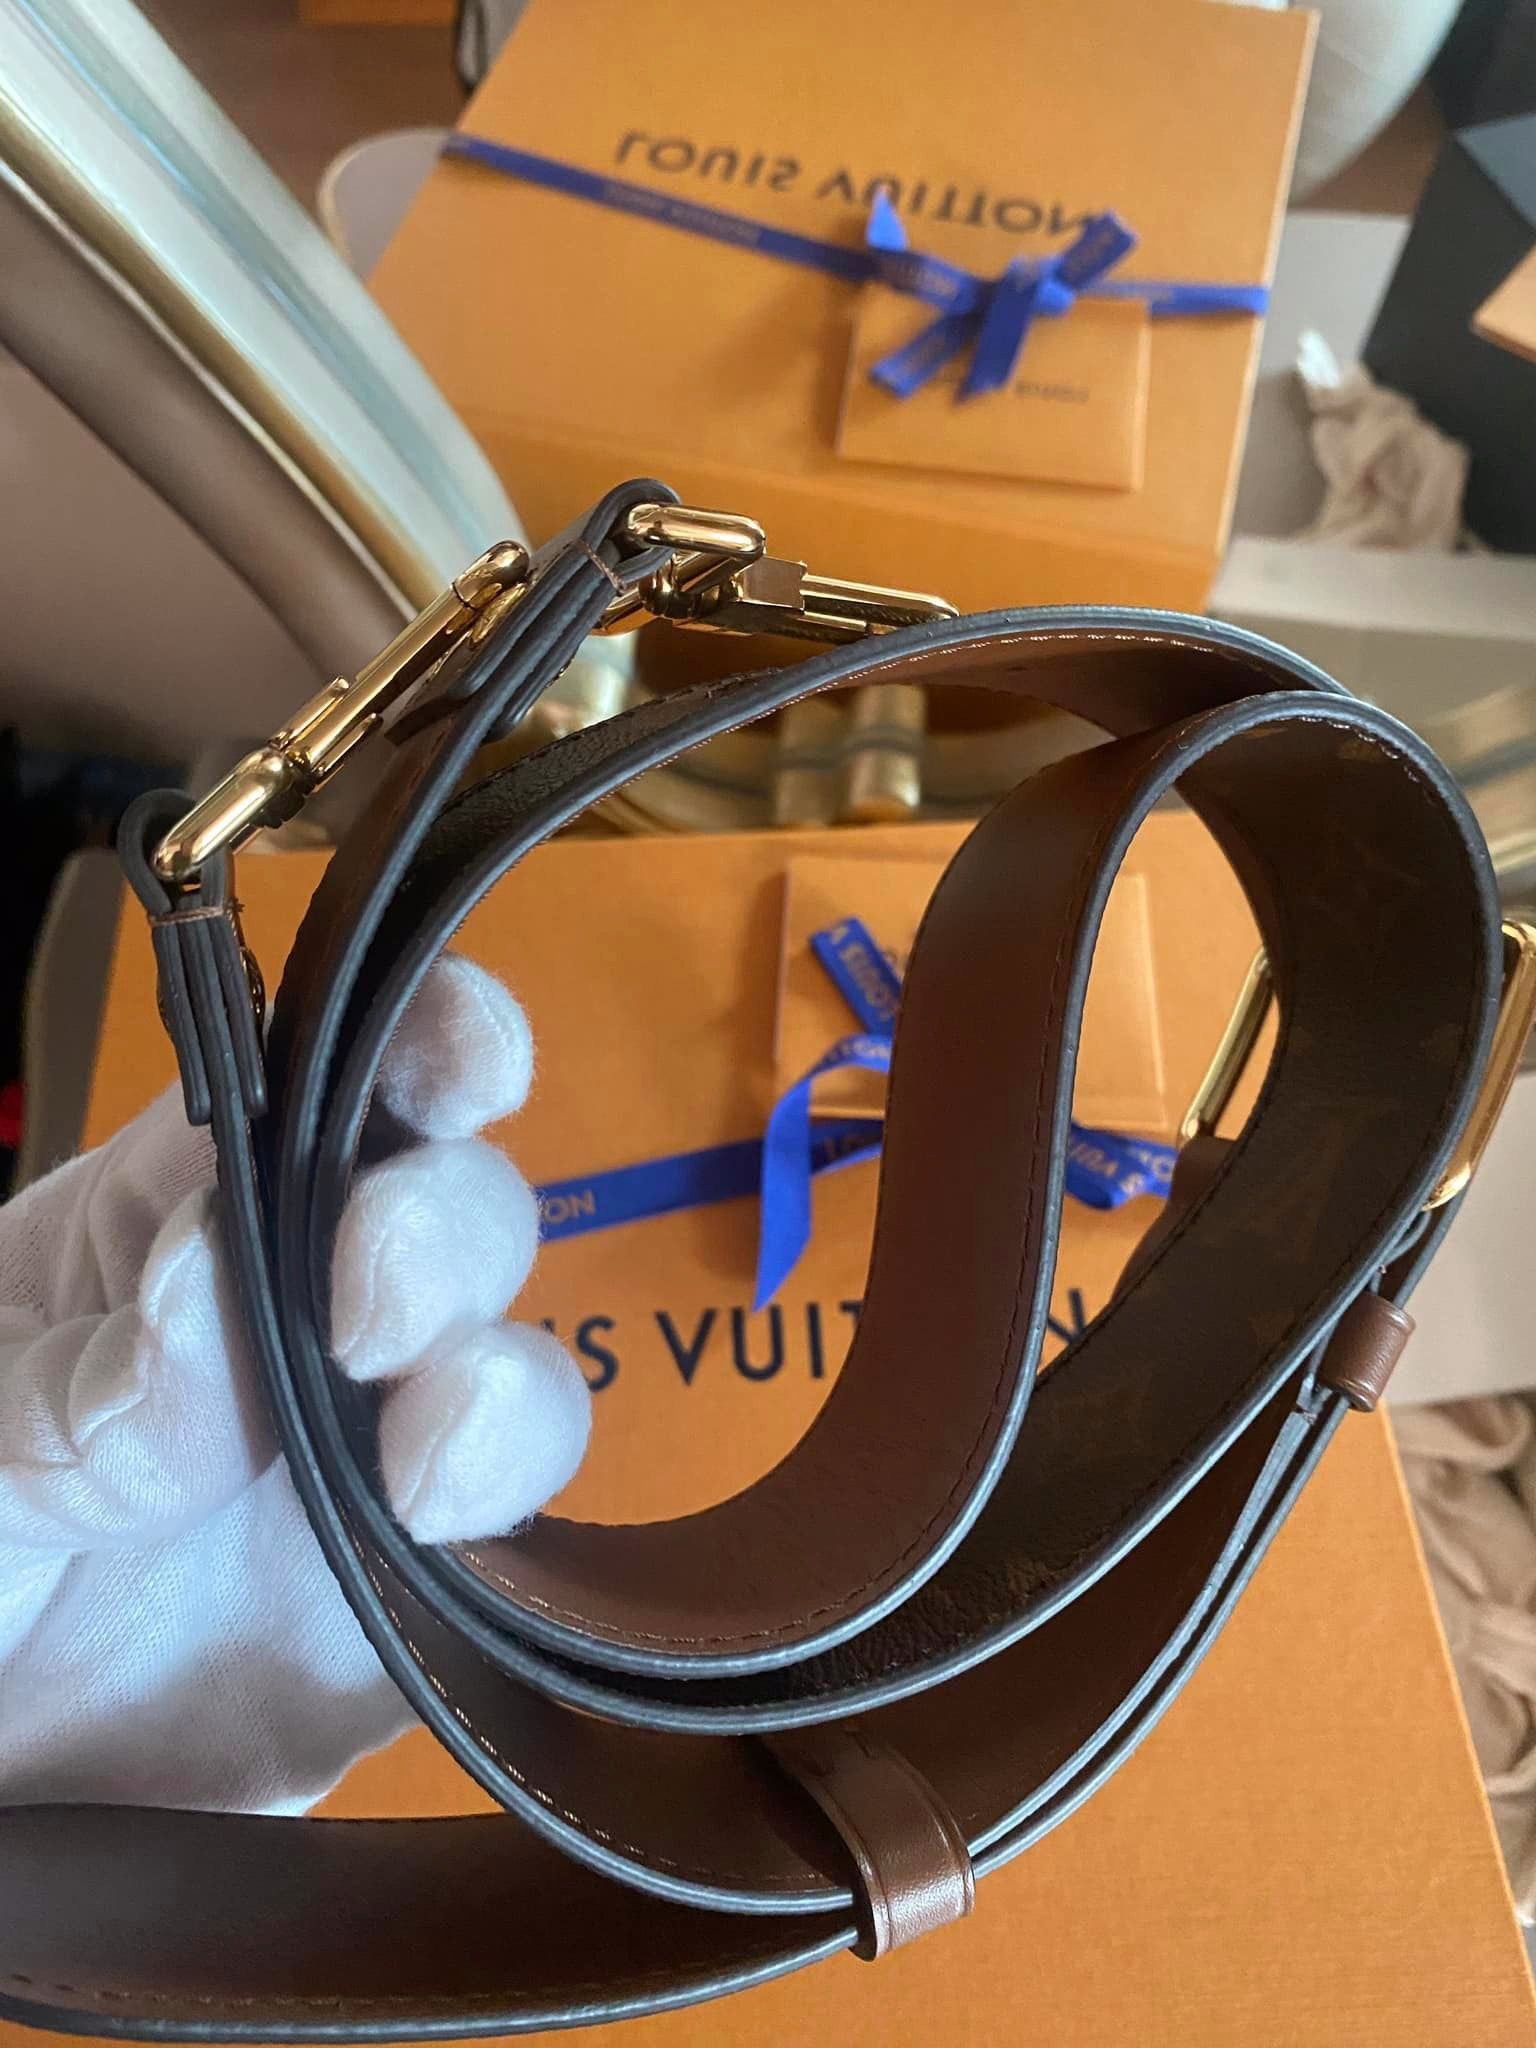 Louis Vuitton Adjustable Shoulder Strap 16 mm Ebene Brown EPI